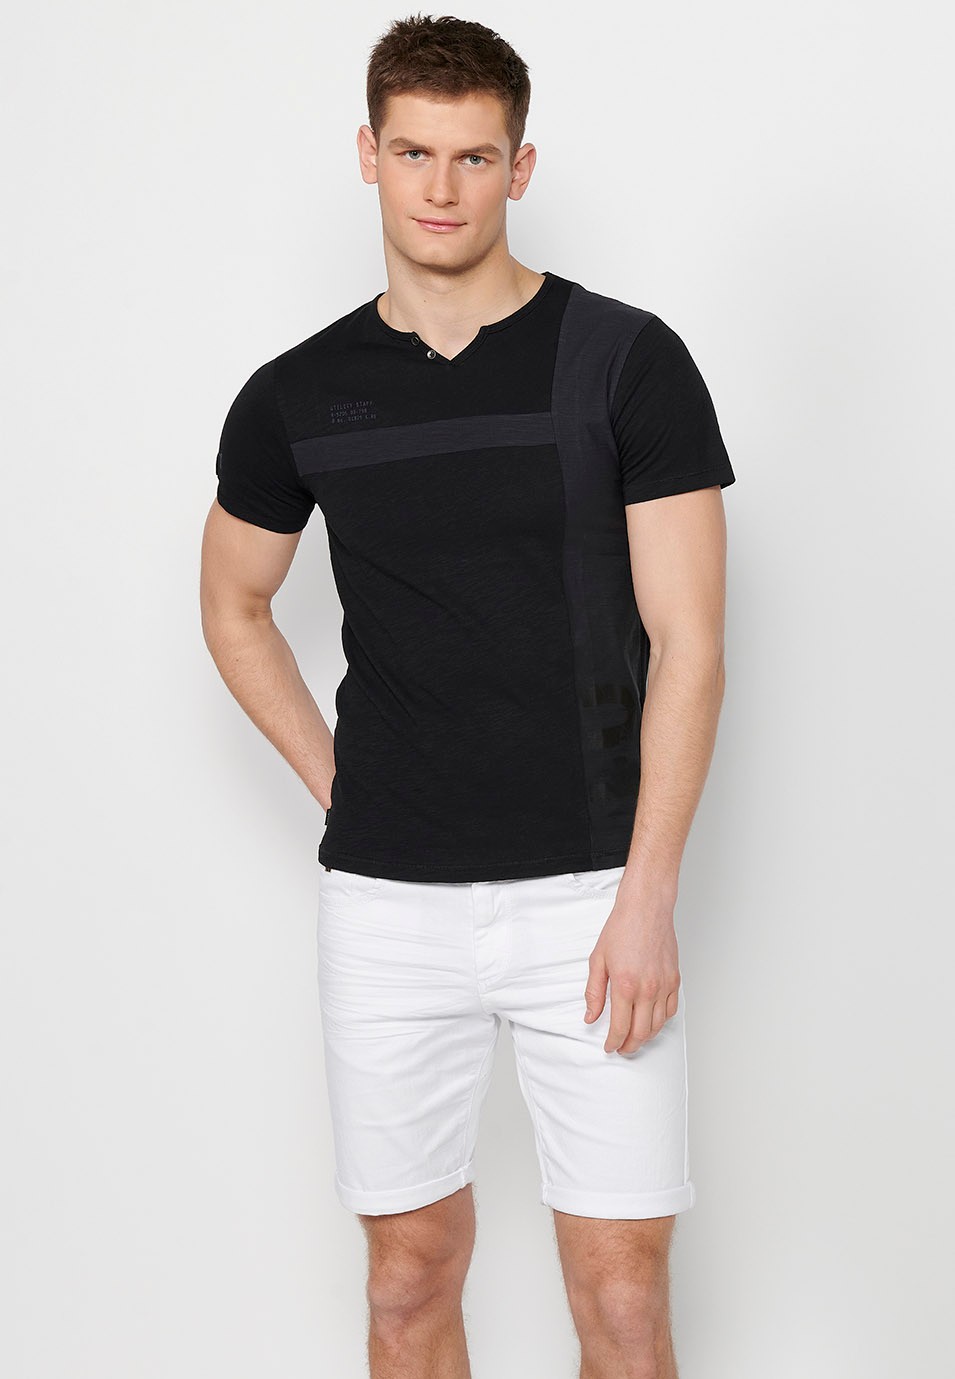 T-shirt homme noir à manches courtes en coton, col rond avec ouverture boutonnée